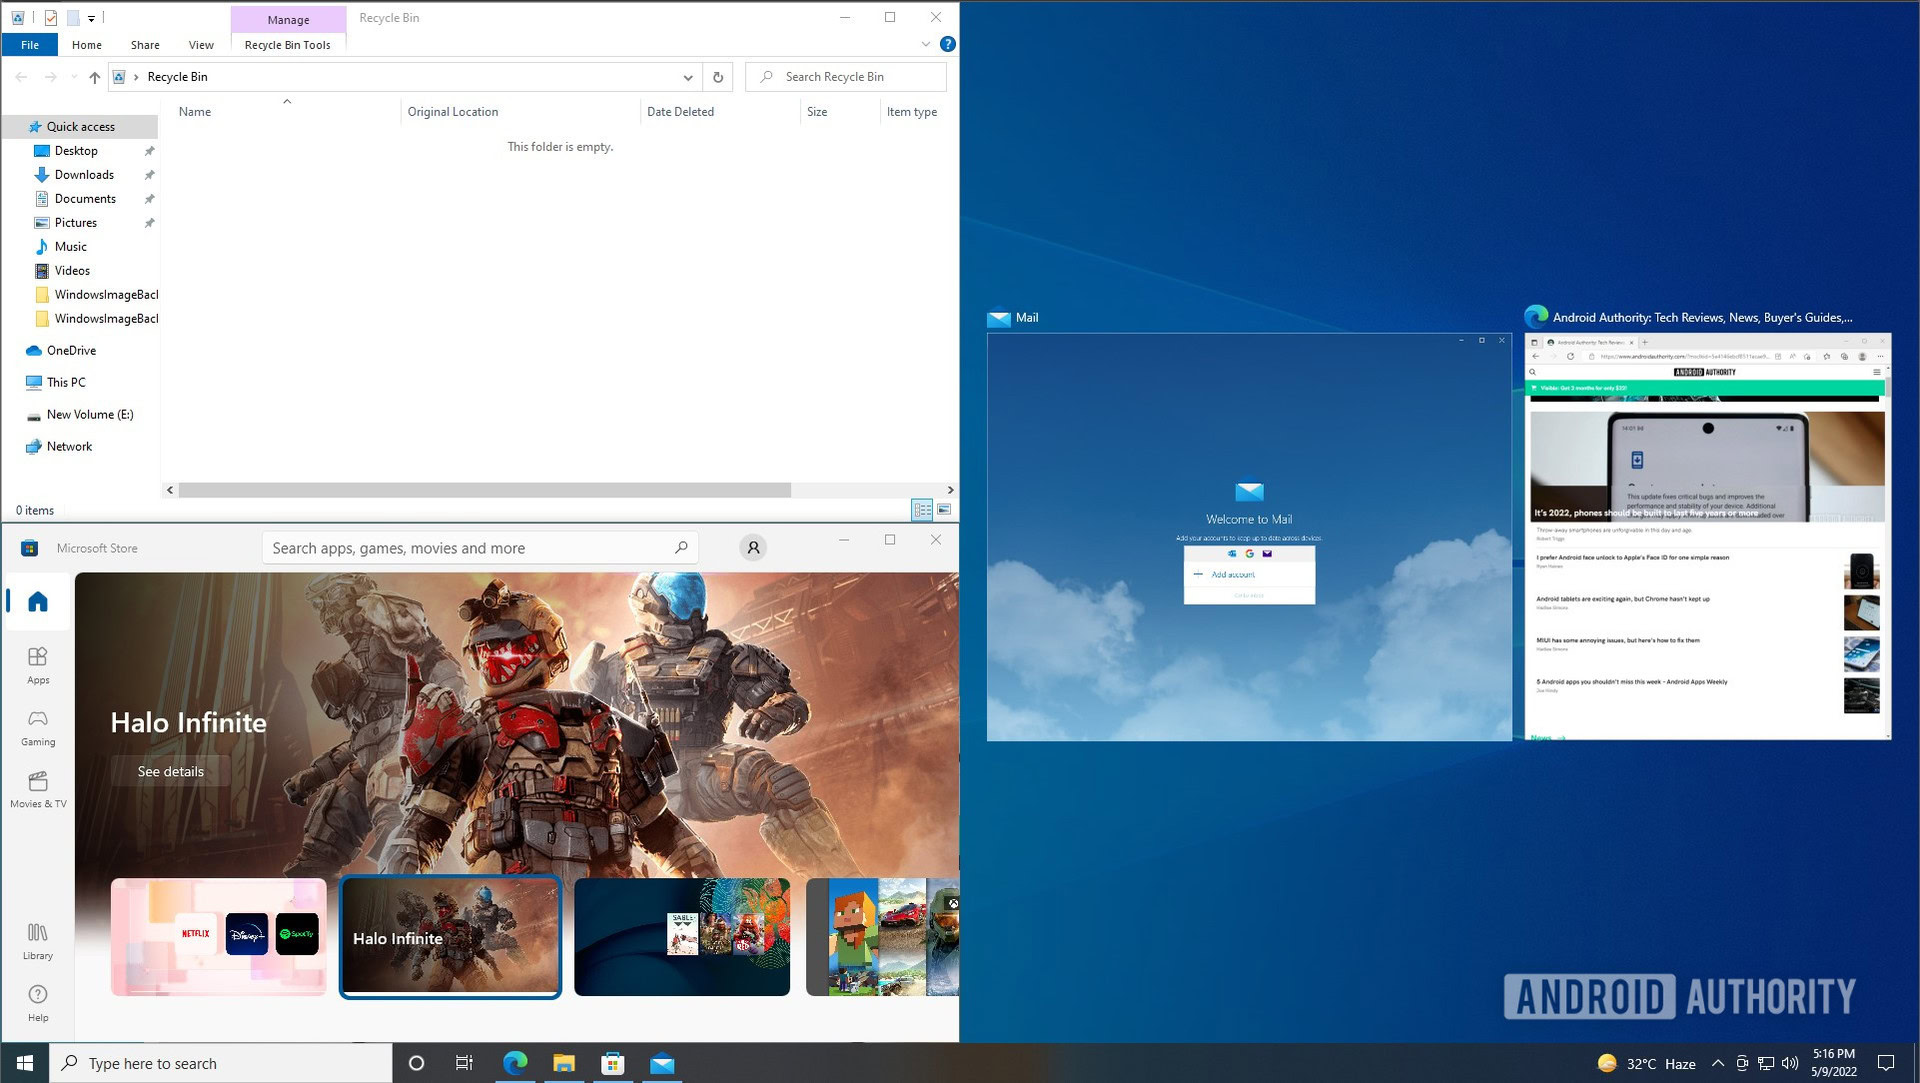 Windows 10 split screen snap assist three windows